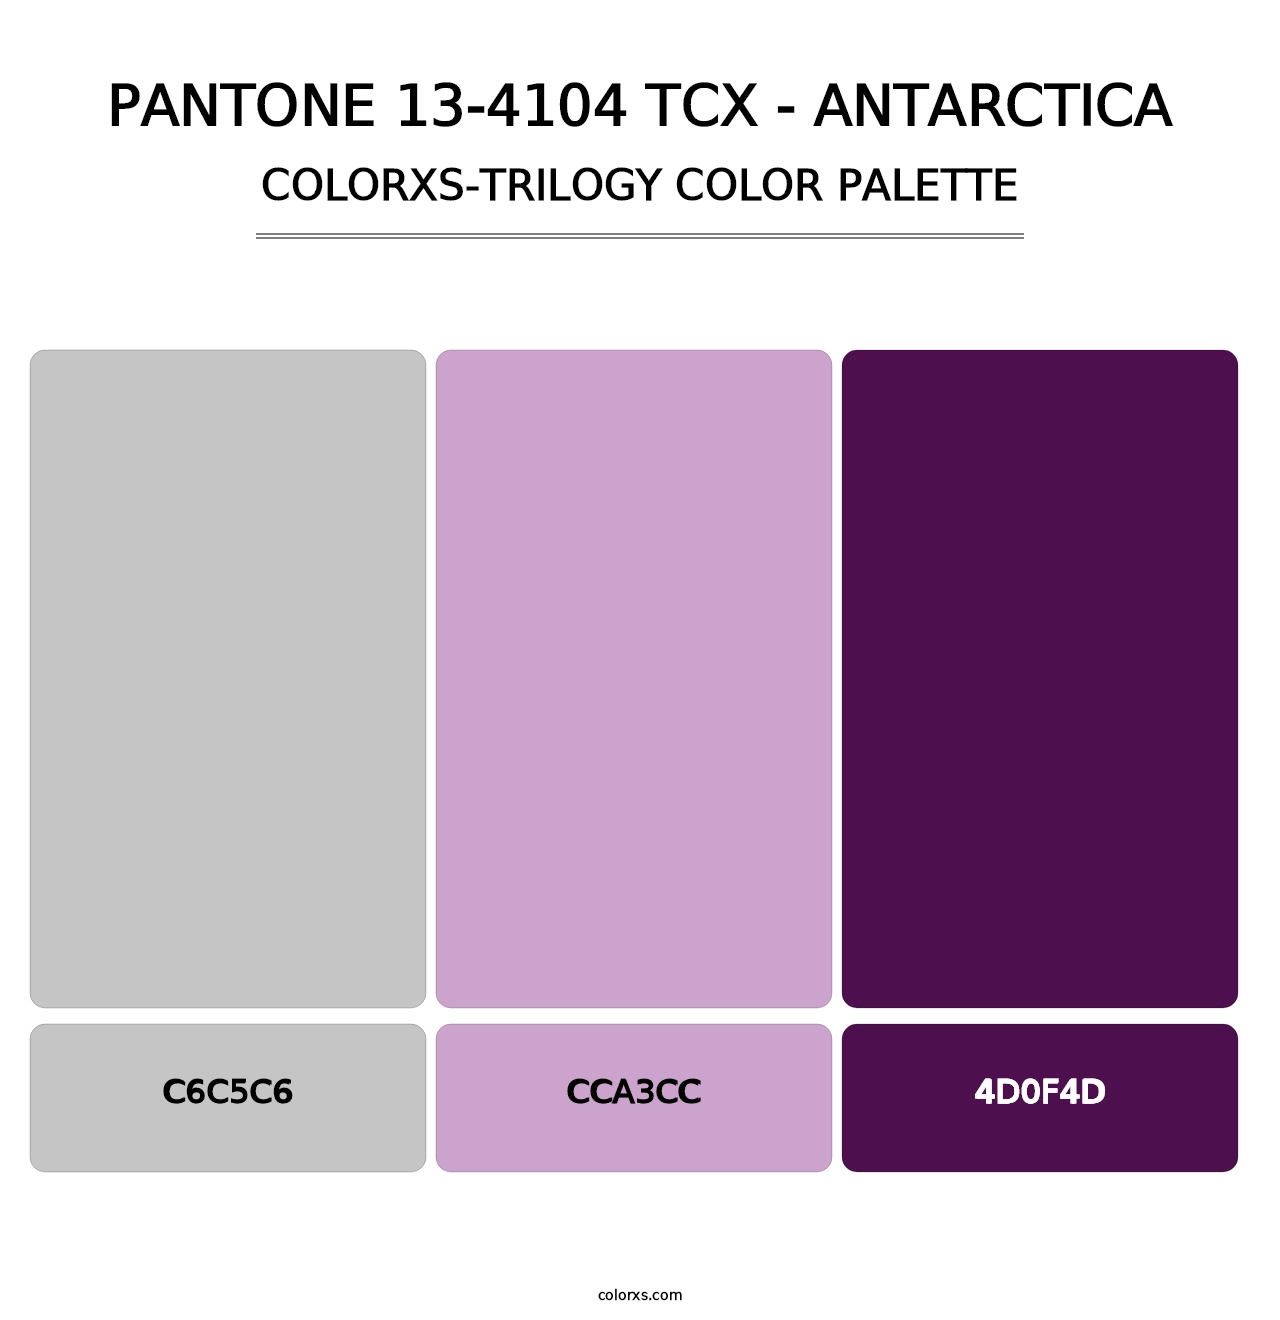 PANTONE 13-4104 TCX - Antarctica - Colorxs Trilogy Palette